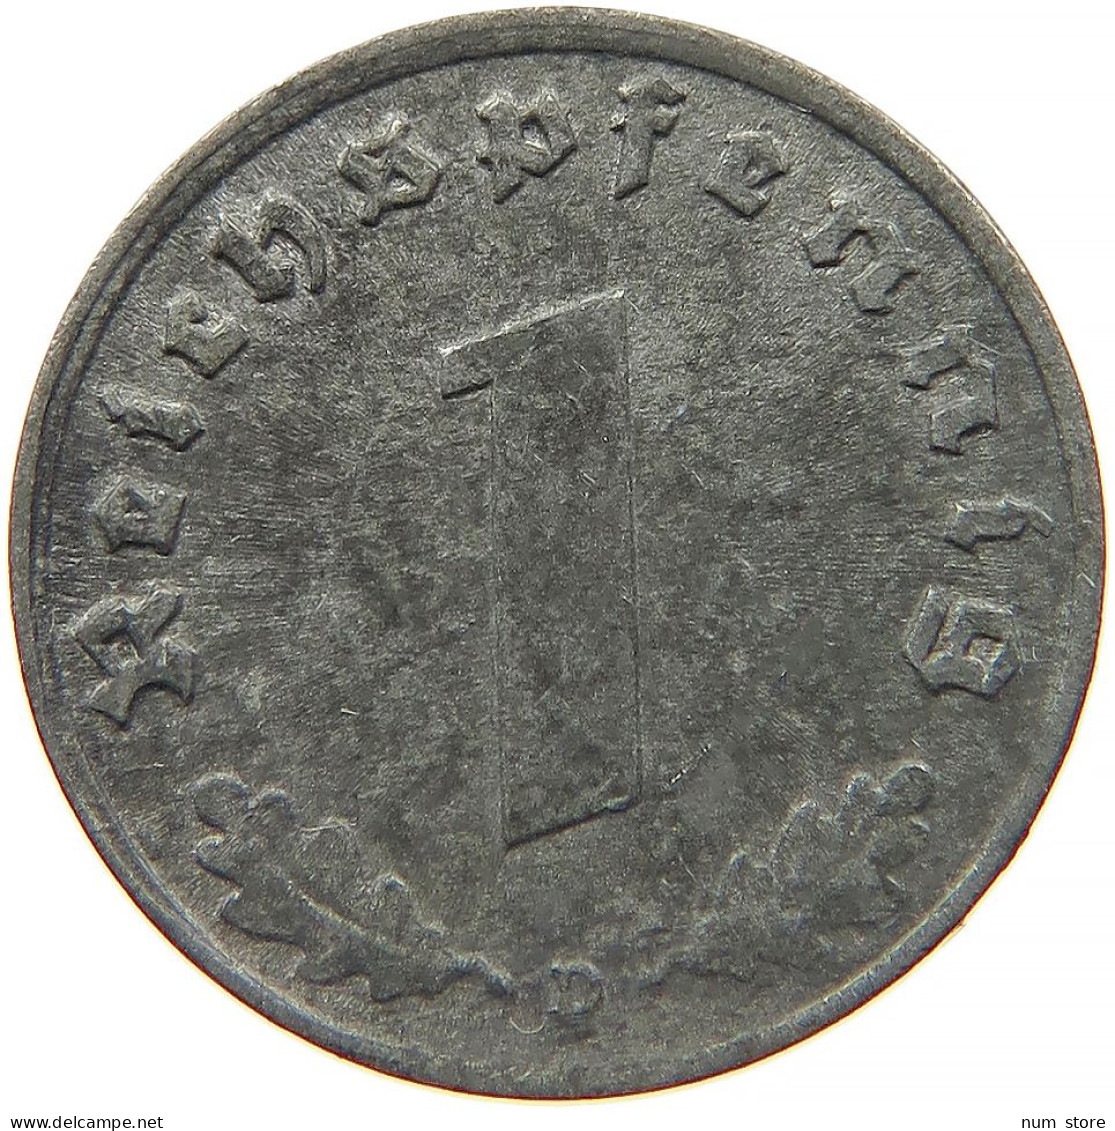 GERMANY 1 REICHSPFENNIG 1943 D #s091 1049 - 1 Reichspfennig